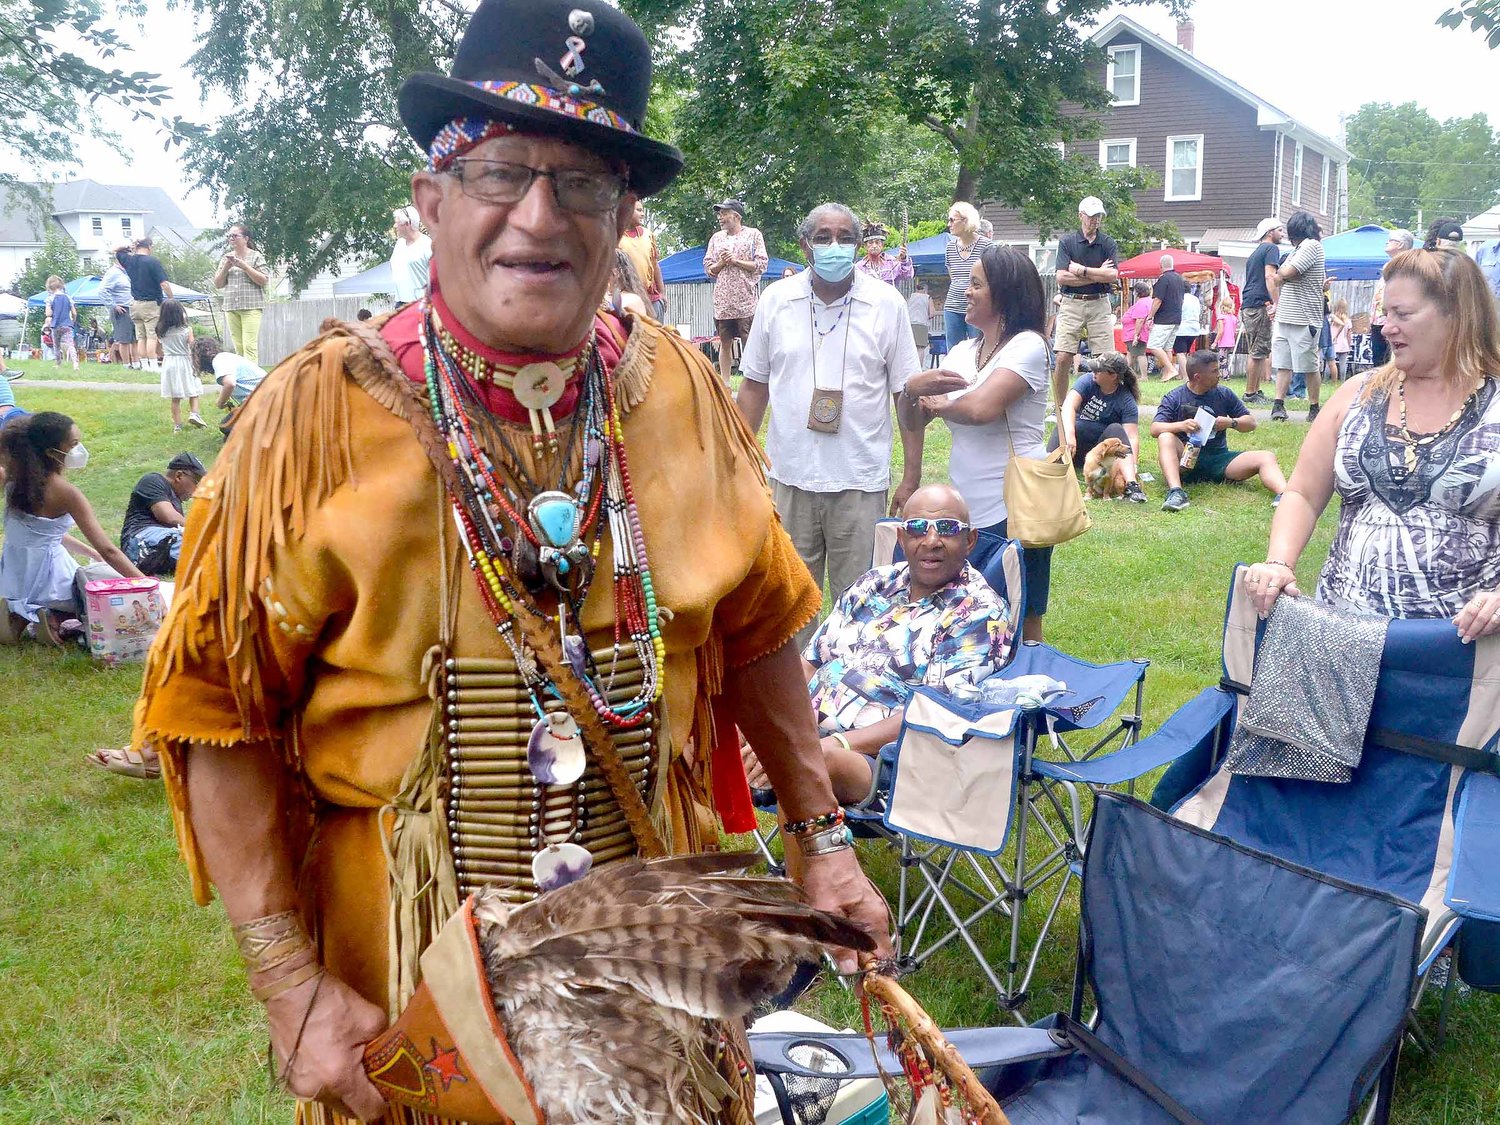 Pokanoket Tribe Member Harry "Hawk" Edmonds greets visitors to last year's Pokanoket Heritage Day event at Burr's Hill Park in Warren.